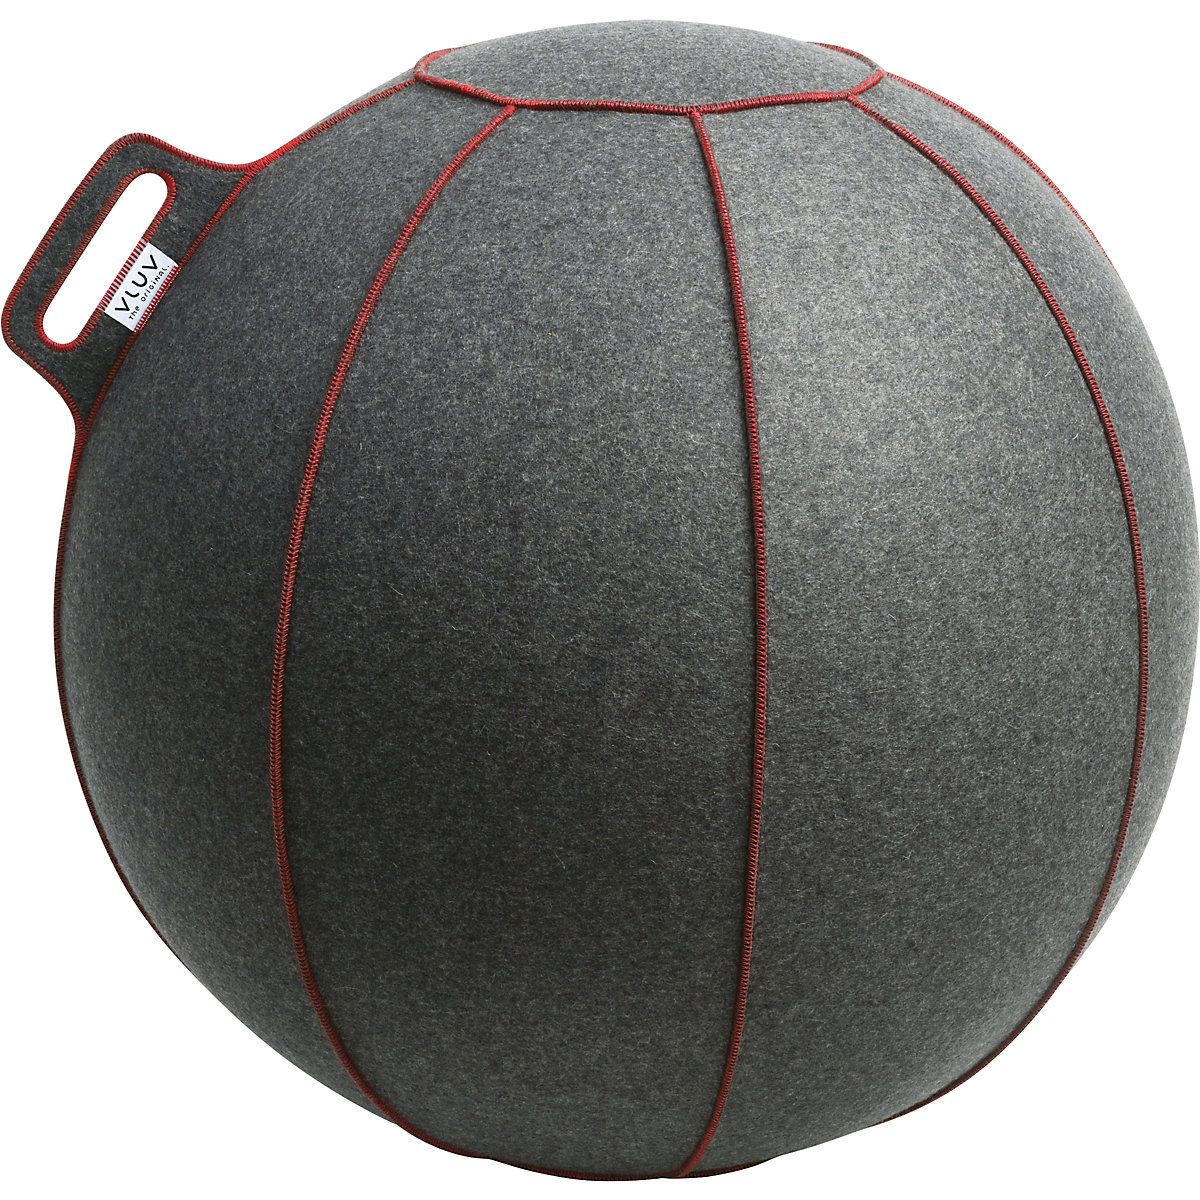 VELT Swiss ball – VLUV, made of merino wool felt, 700 – 750 mm, mottled grey/red